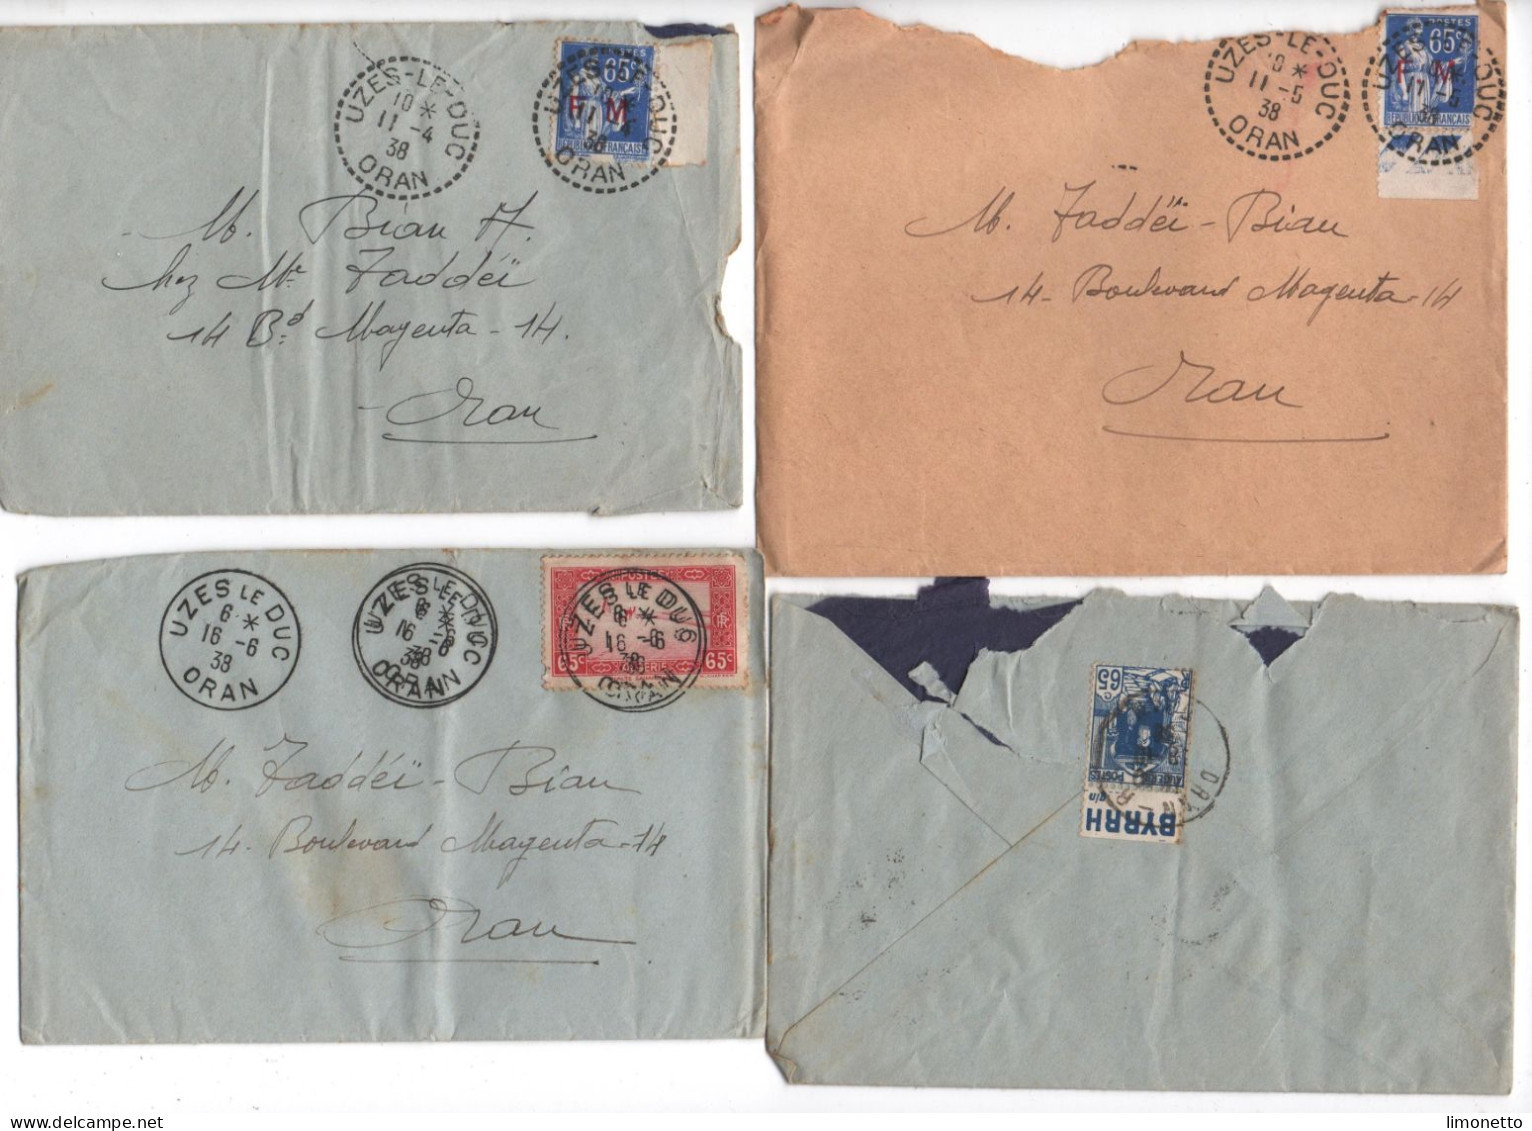 ALGERIE -1938 - Lot De 4 Enveloppes - D'UZES-le-DUC -ORAN - Aff. Divers Dont FM 65 Cts -1 Timbre Bandelette PUB - Storia Postale